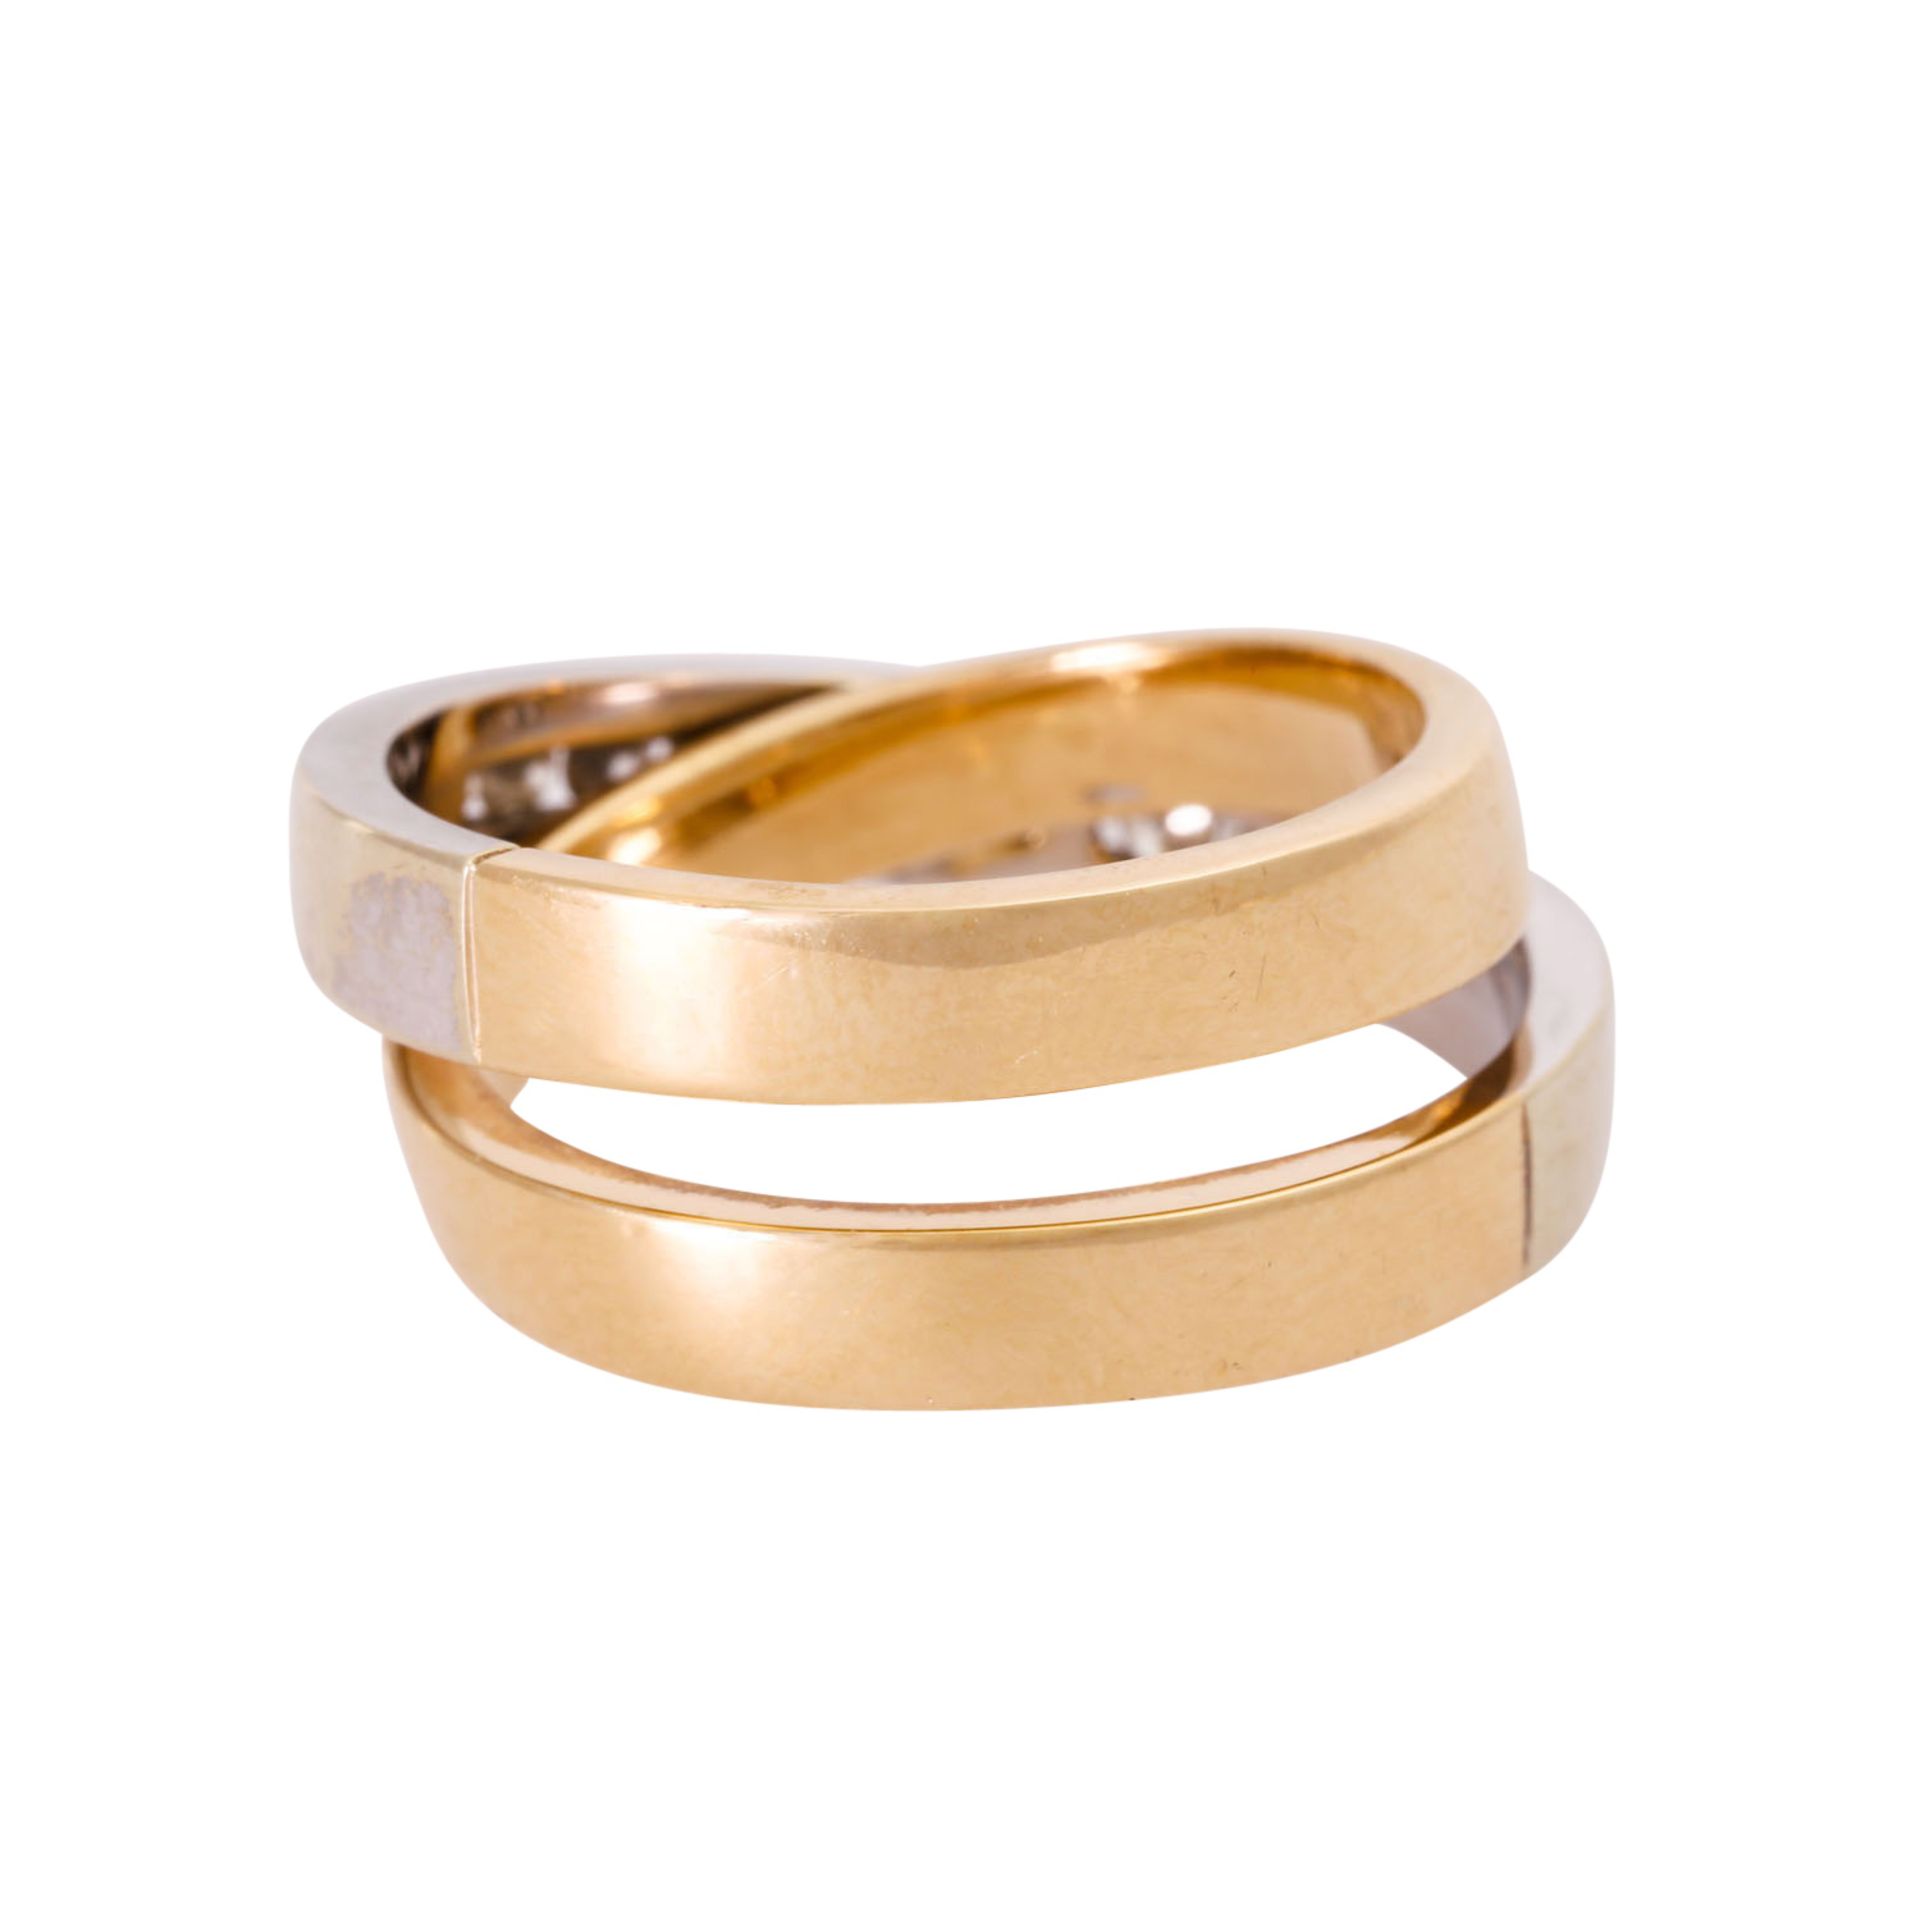 CHRIST Ring mit Brillanten, zus. ca. 0,3 ct, - Image 3 of 3